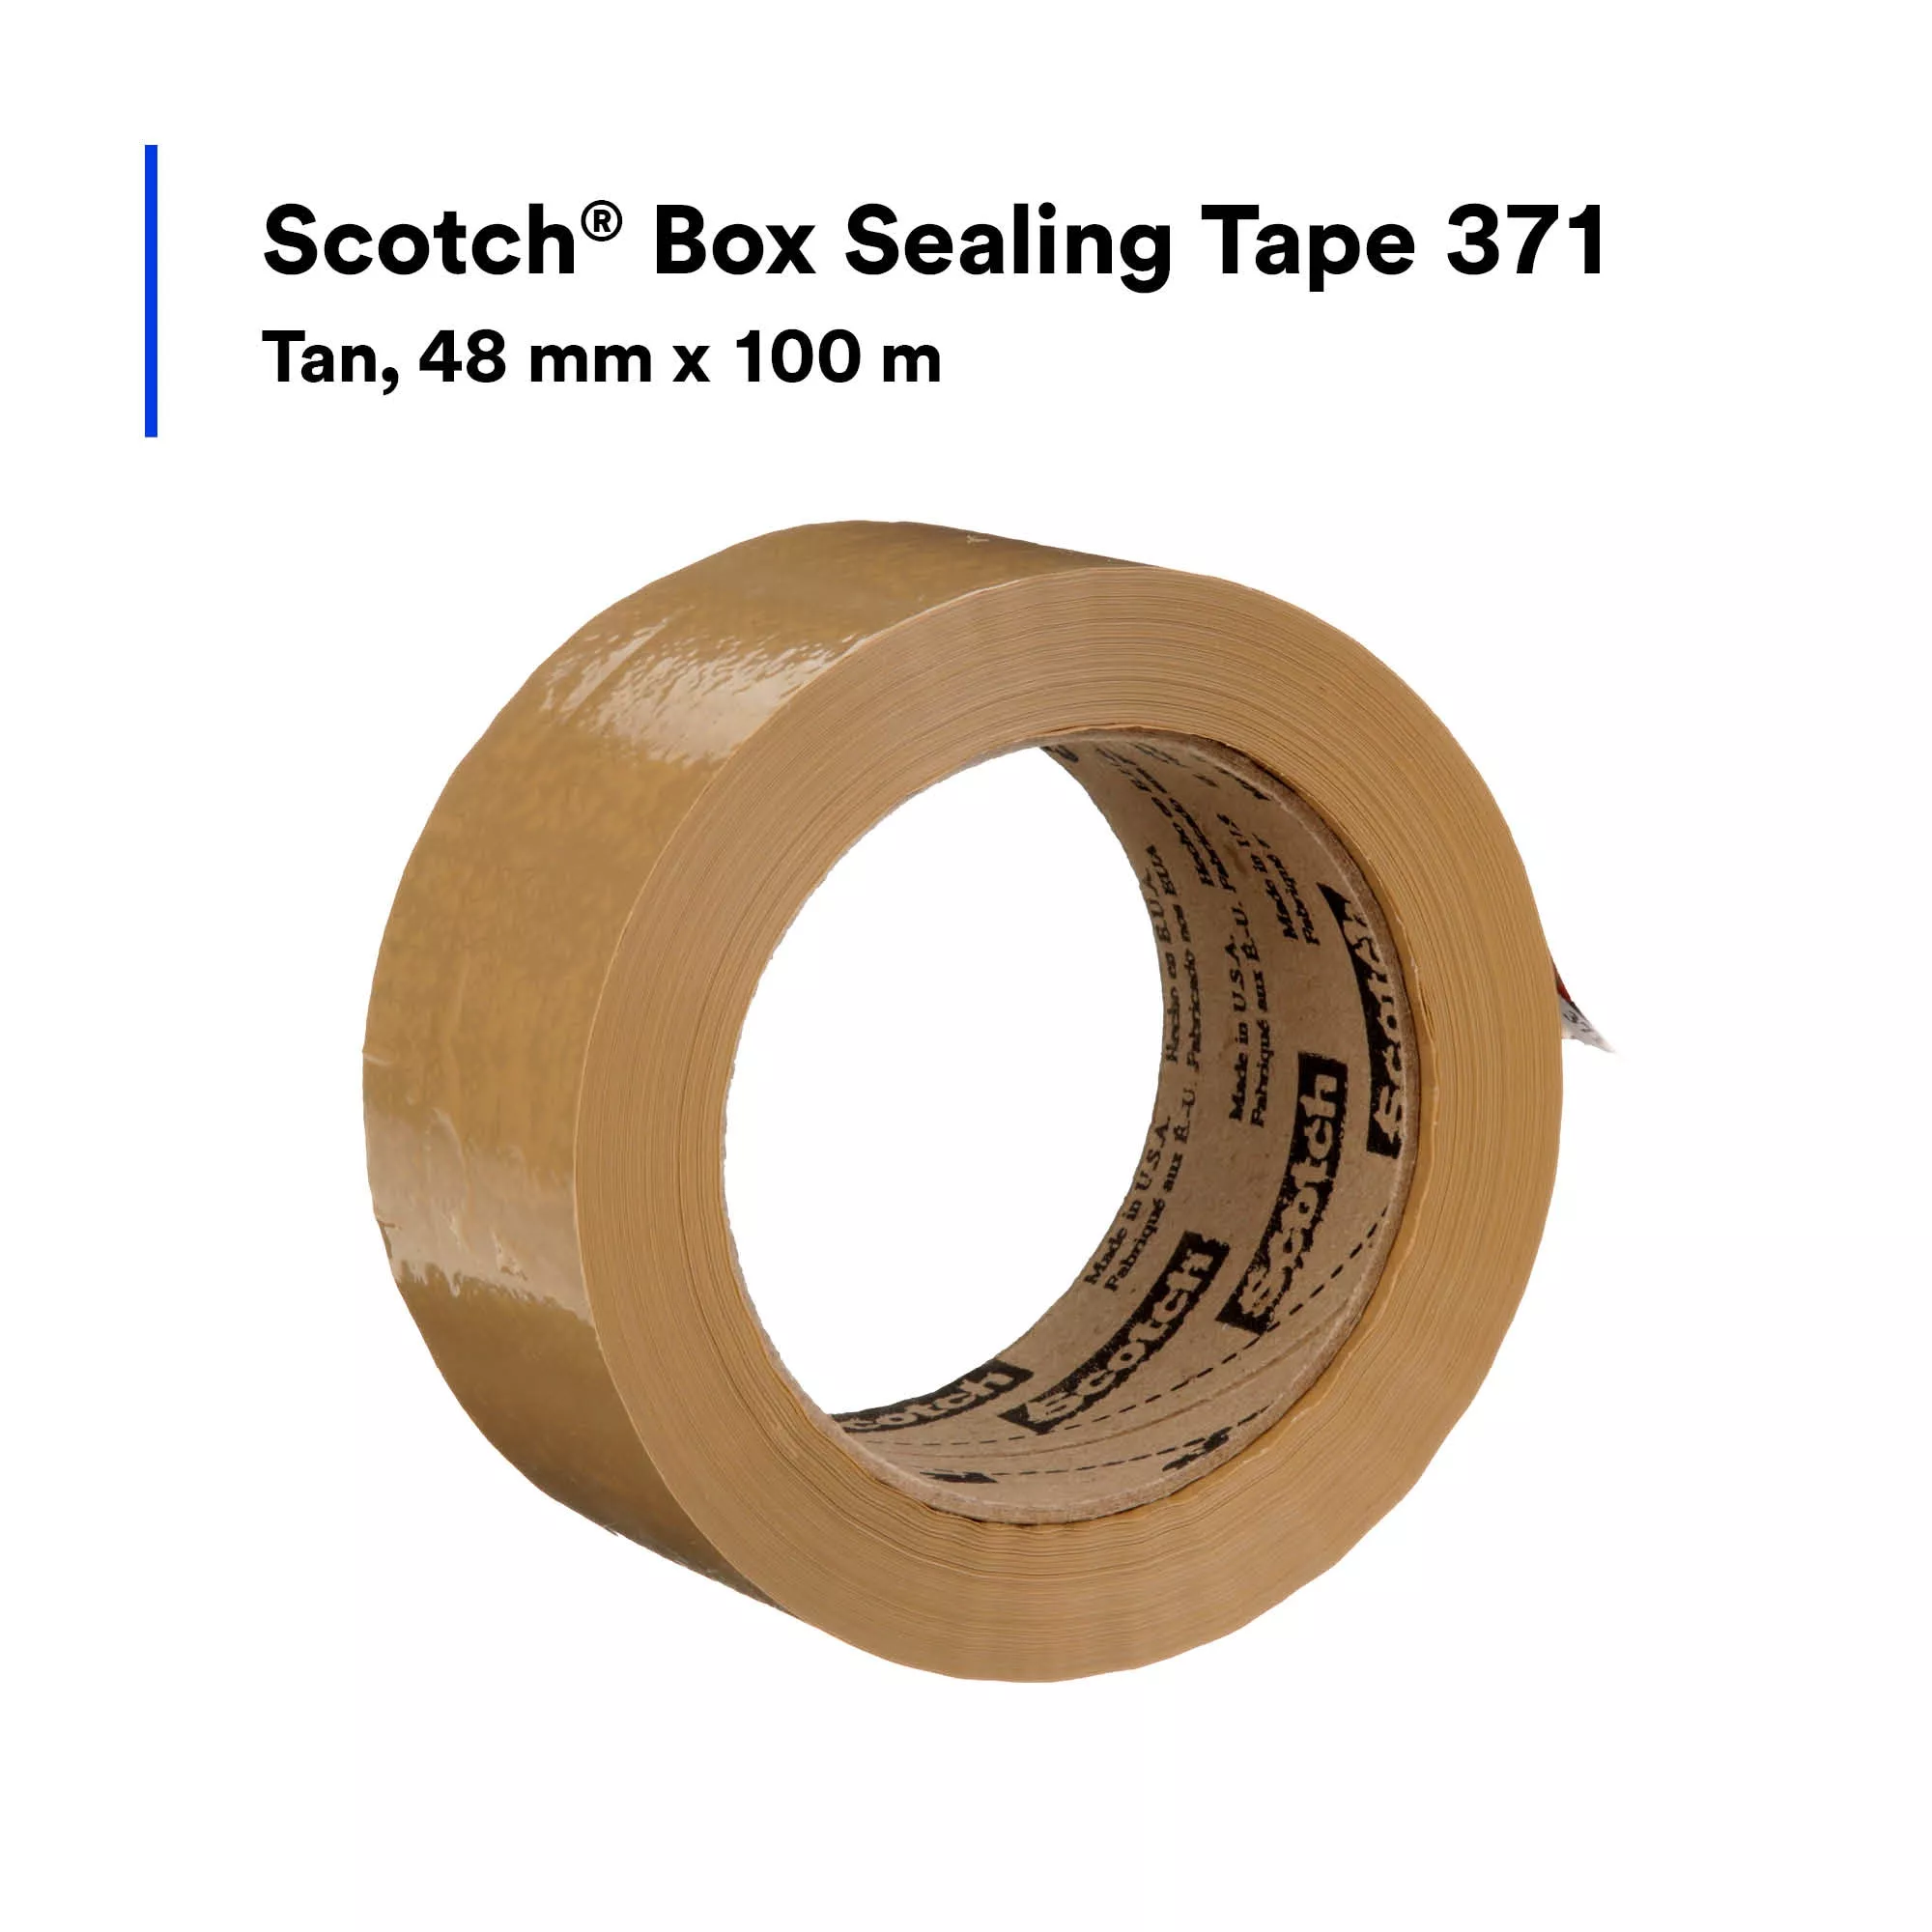 SKU 7010311727 | Scotch® Box Sealing Tape 371